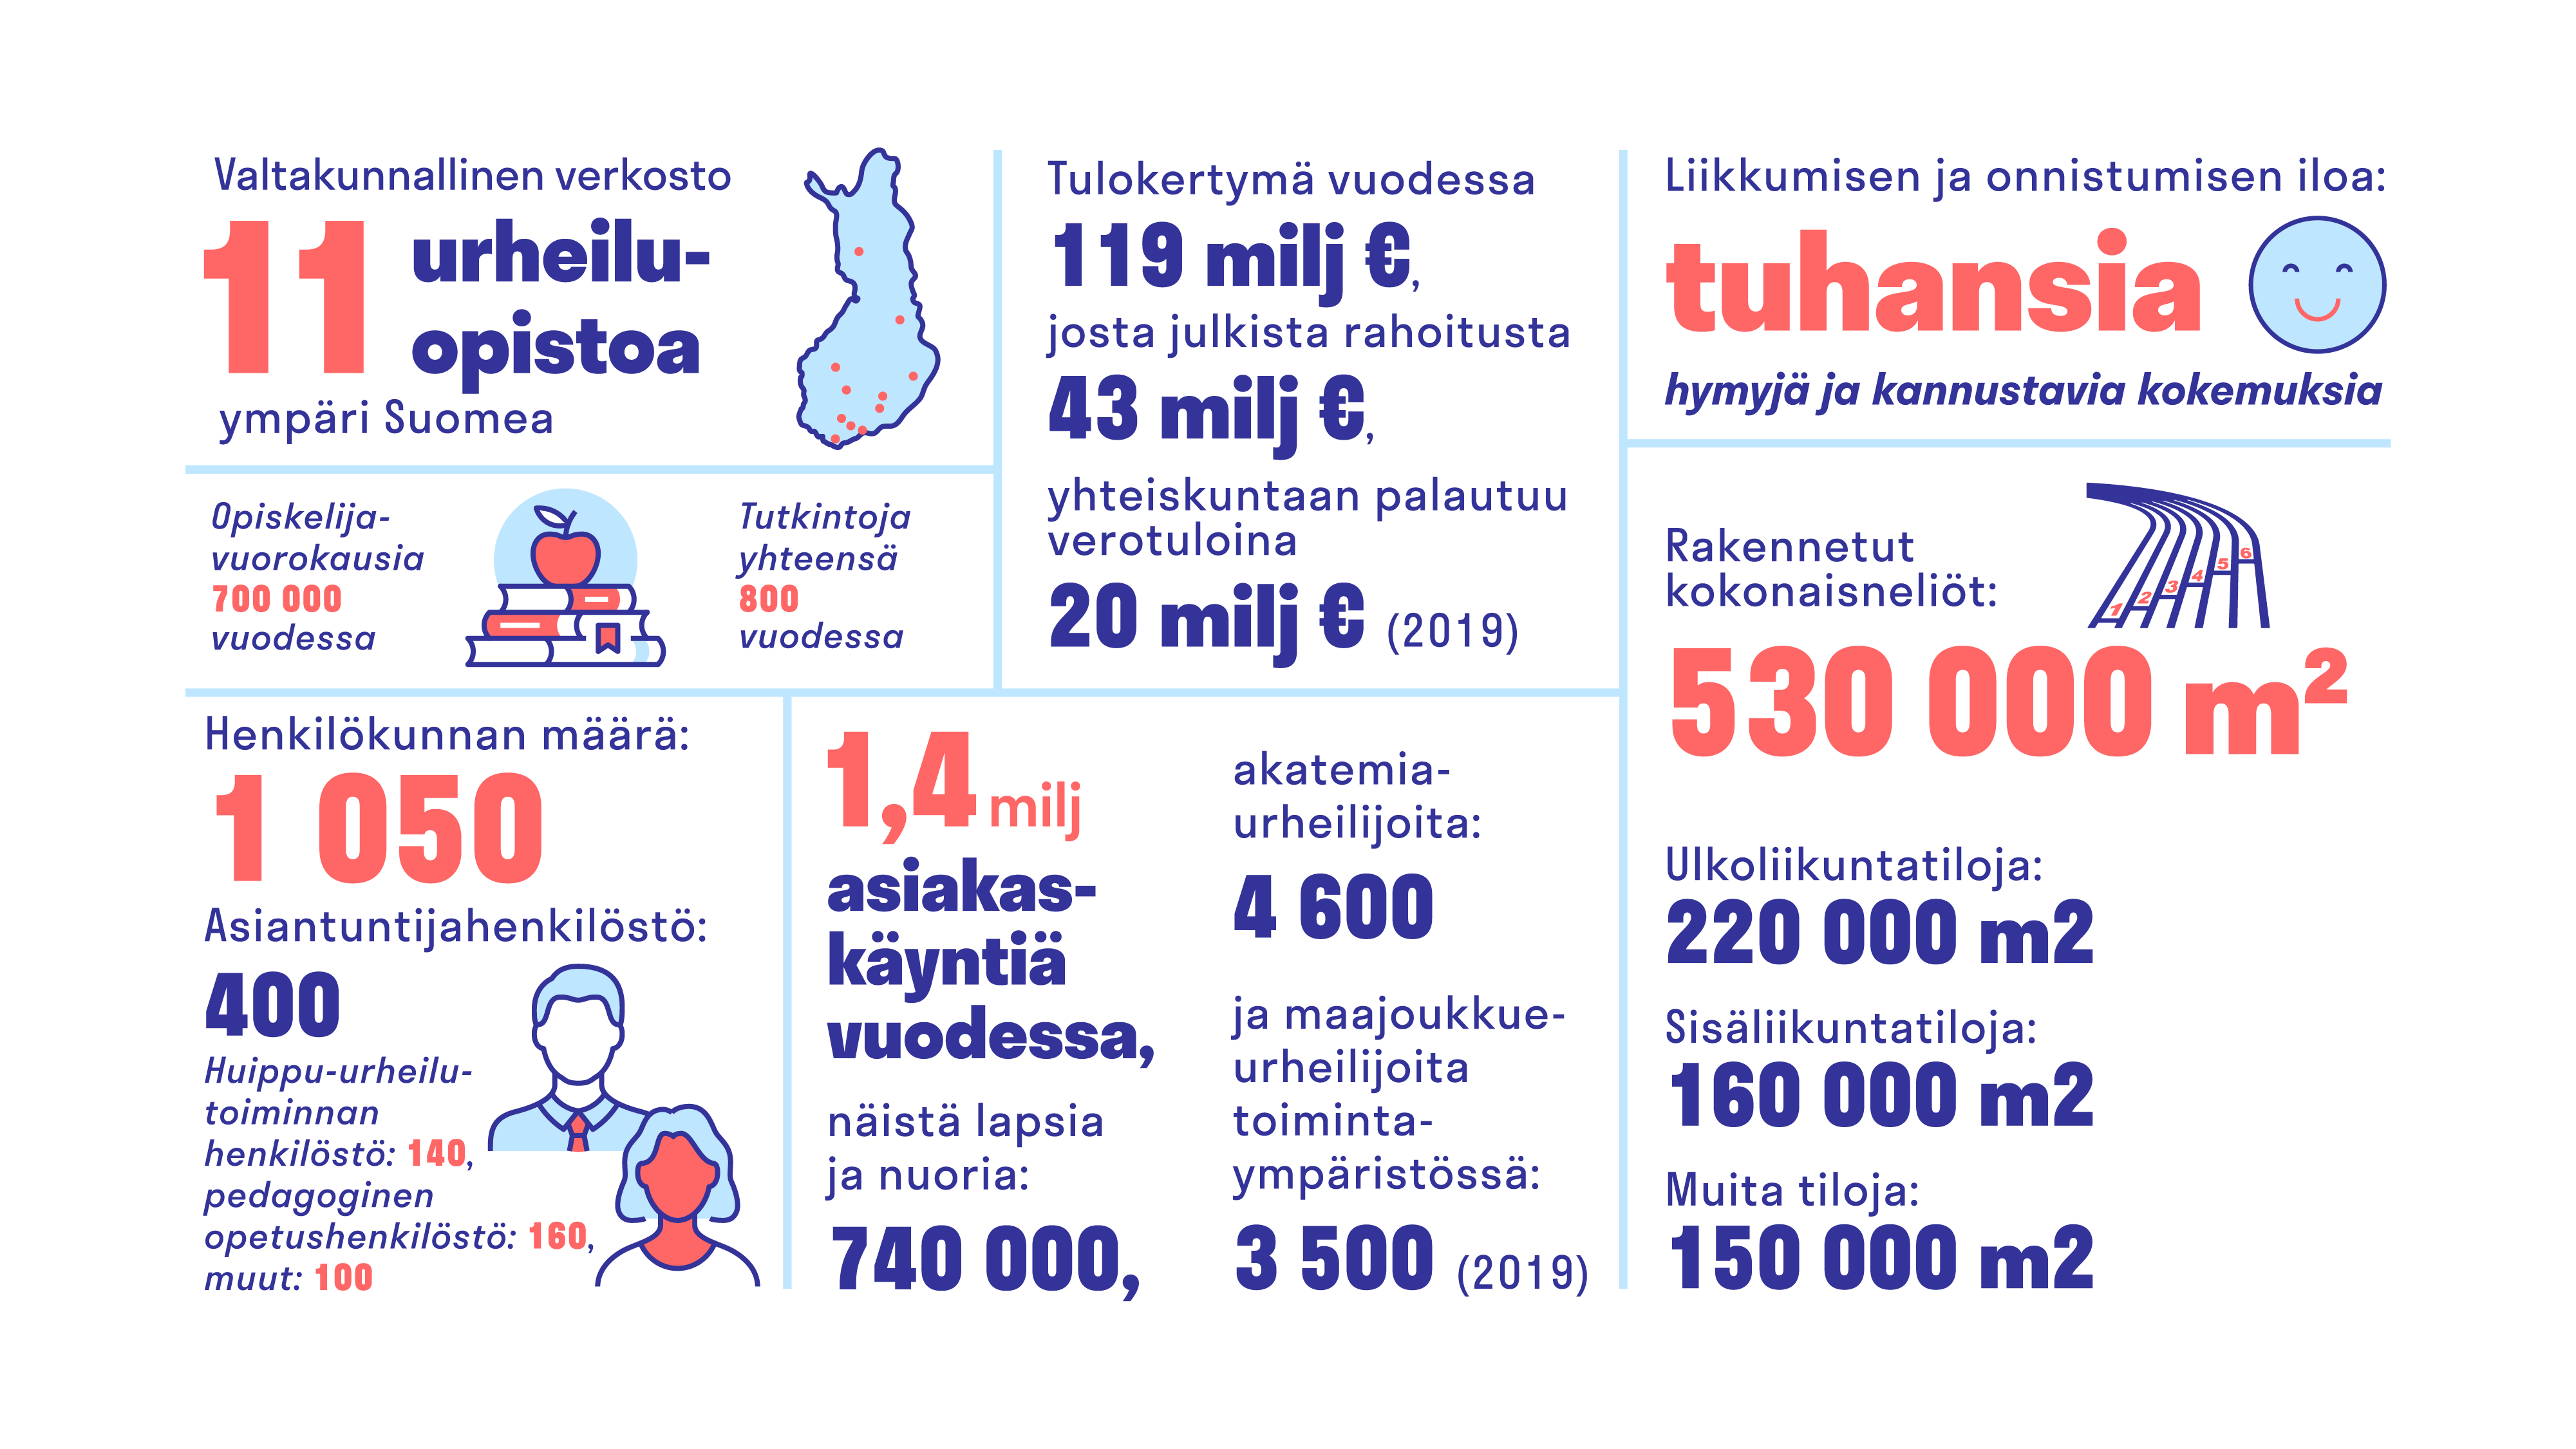 Urheiluopistot muodostavat Suomen suurimman liikunnan ja urheilun  osaamisyhteisön - Eerikkilä